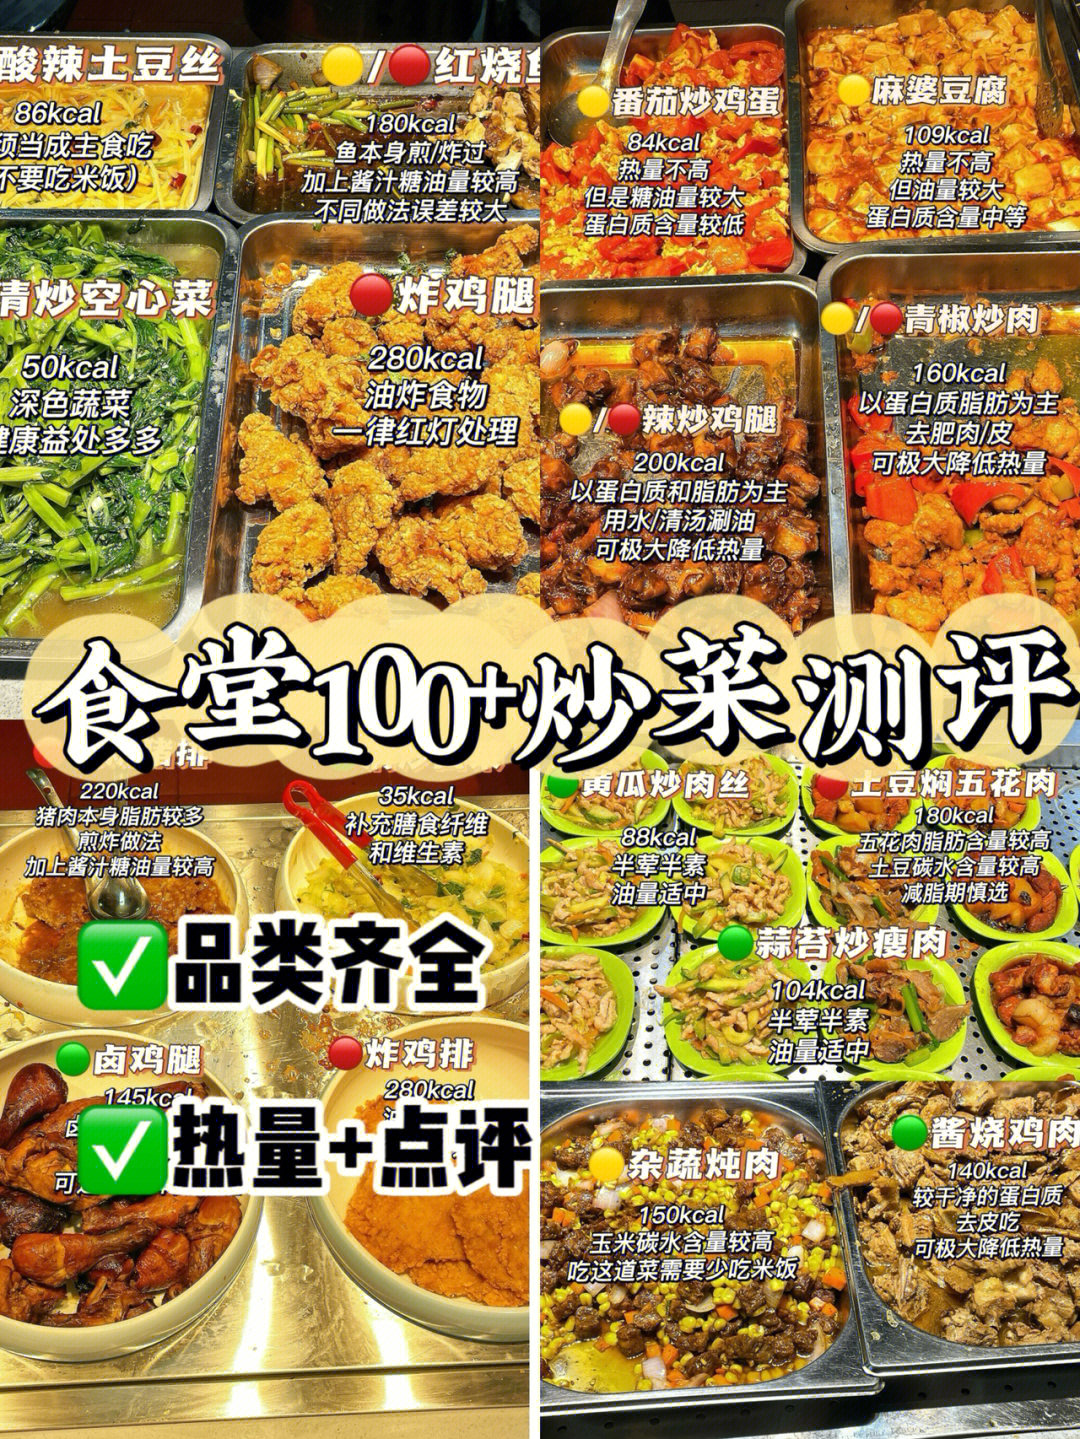 7215图中热量均为菜品每100g热量哦(菜品重量参考外卖餐盒测评